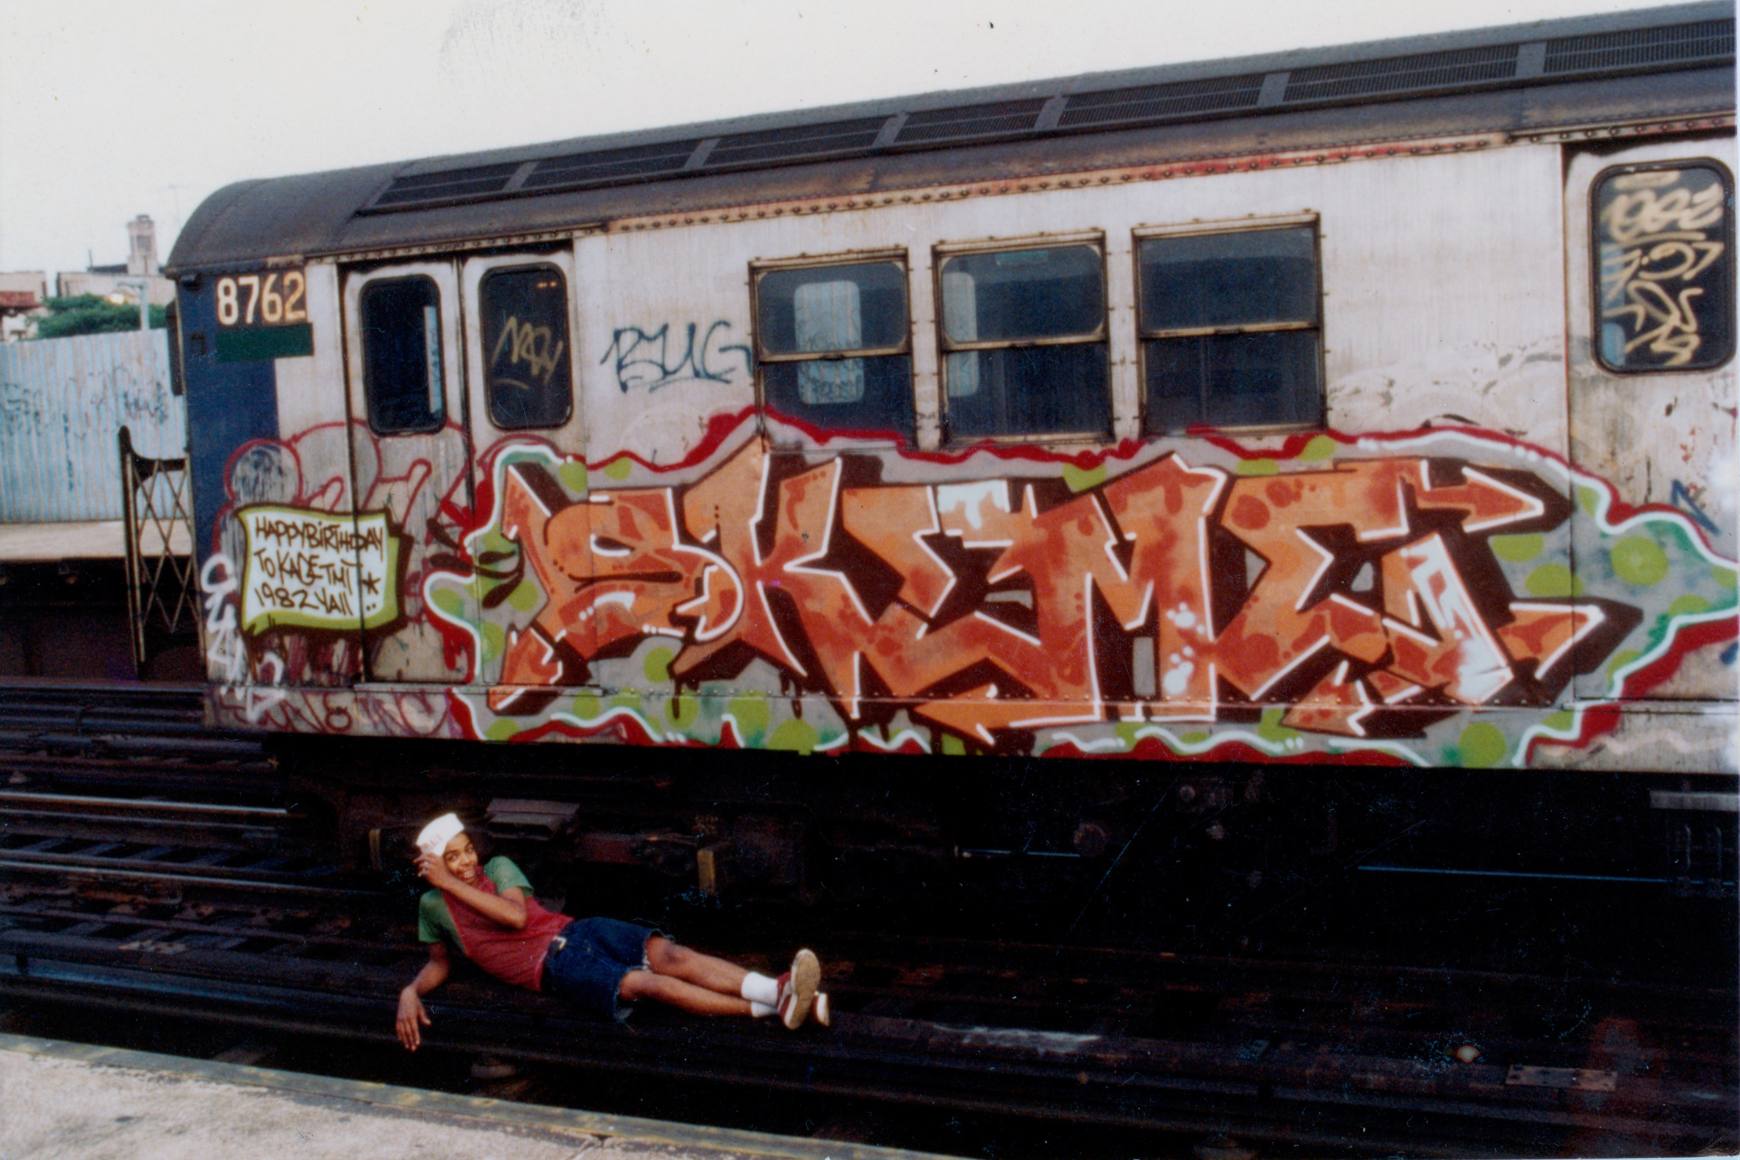 Skeme se trouve sur la voie du métro, sous une rame de métro garée avec une grande œuvre d'art orange de lui éclaboussée dessus.